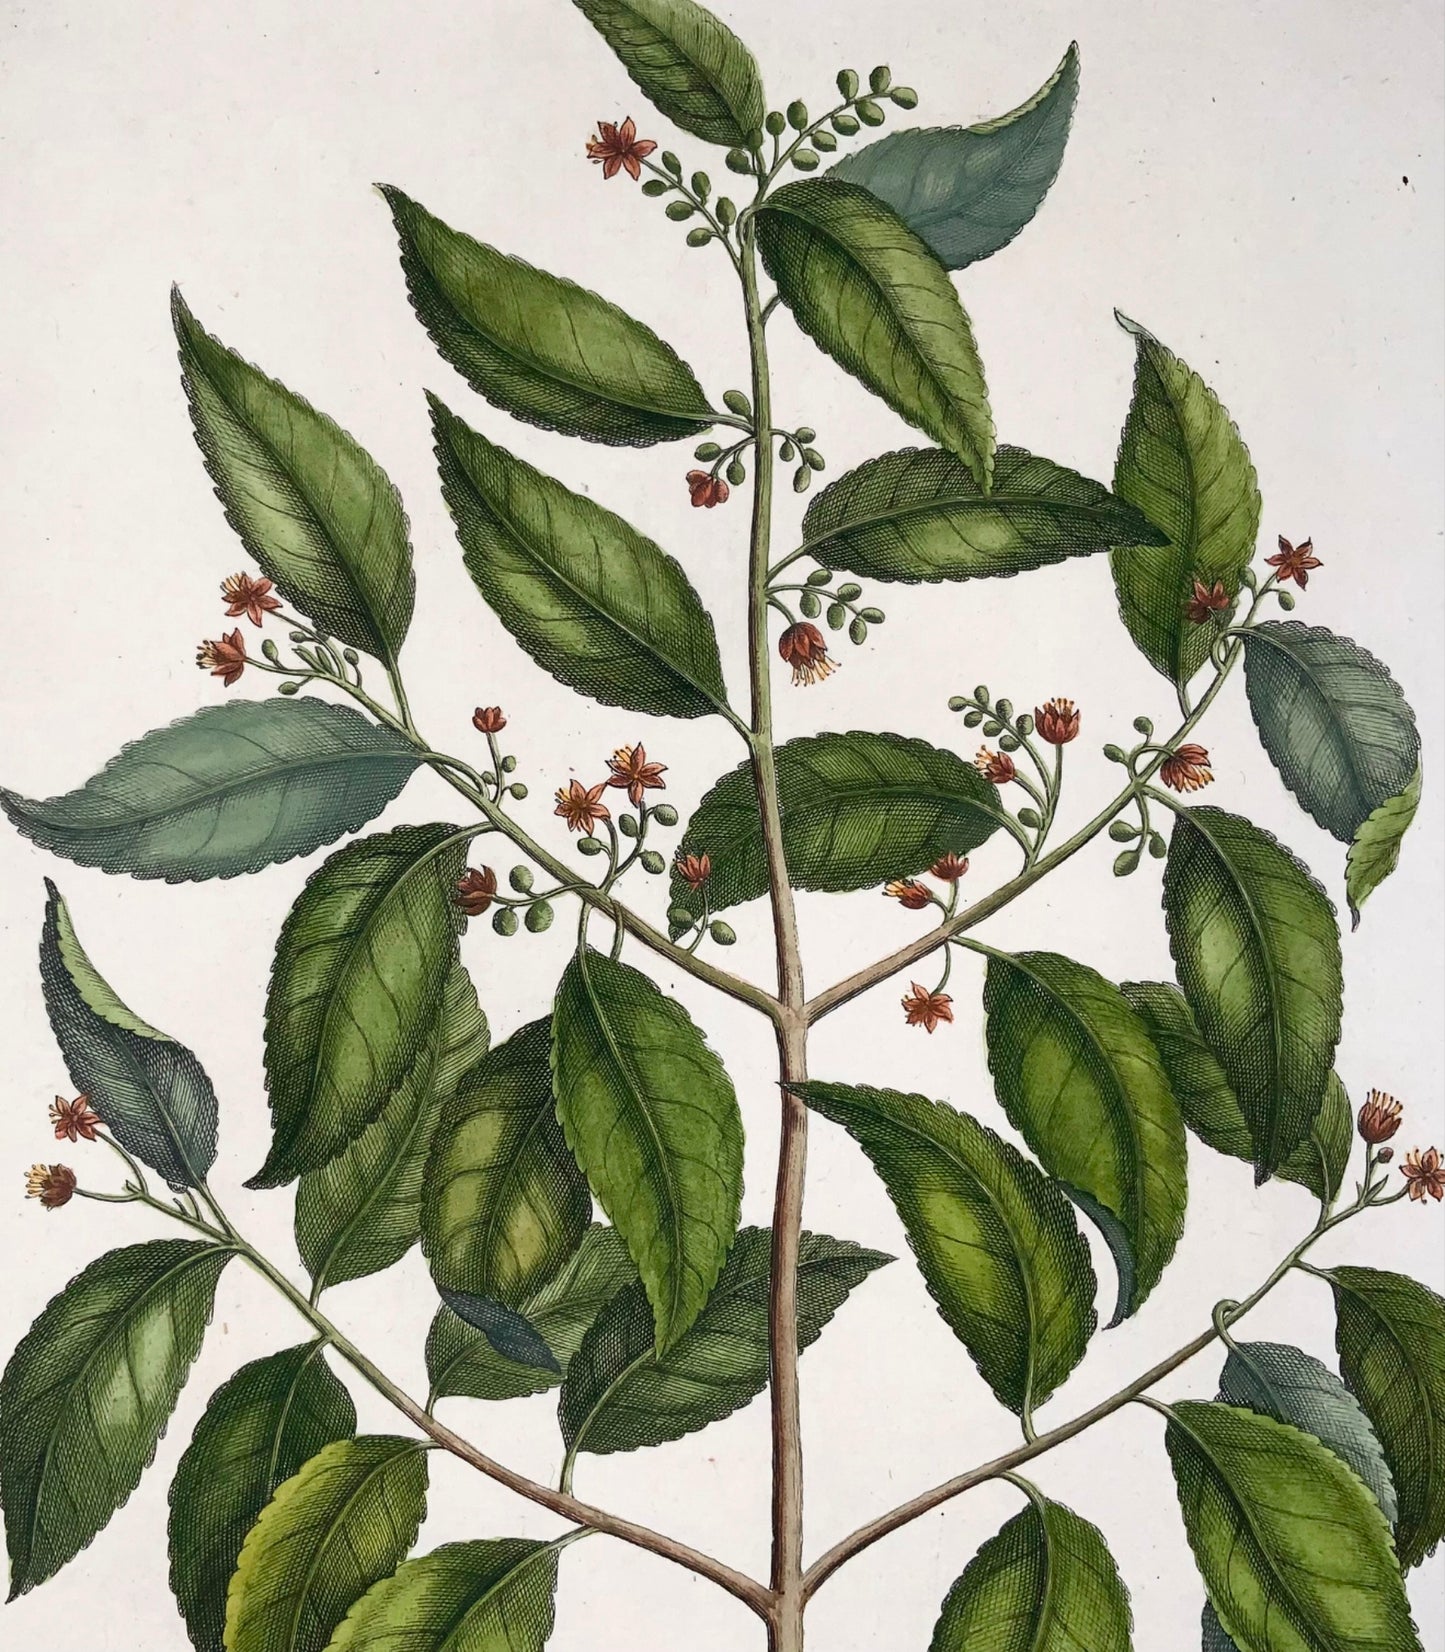 1741 Elaeocarpus Ganitrus, Rumpf, Herbarium Amboinense, couleur de la main, folio, botanique